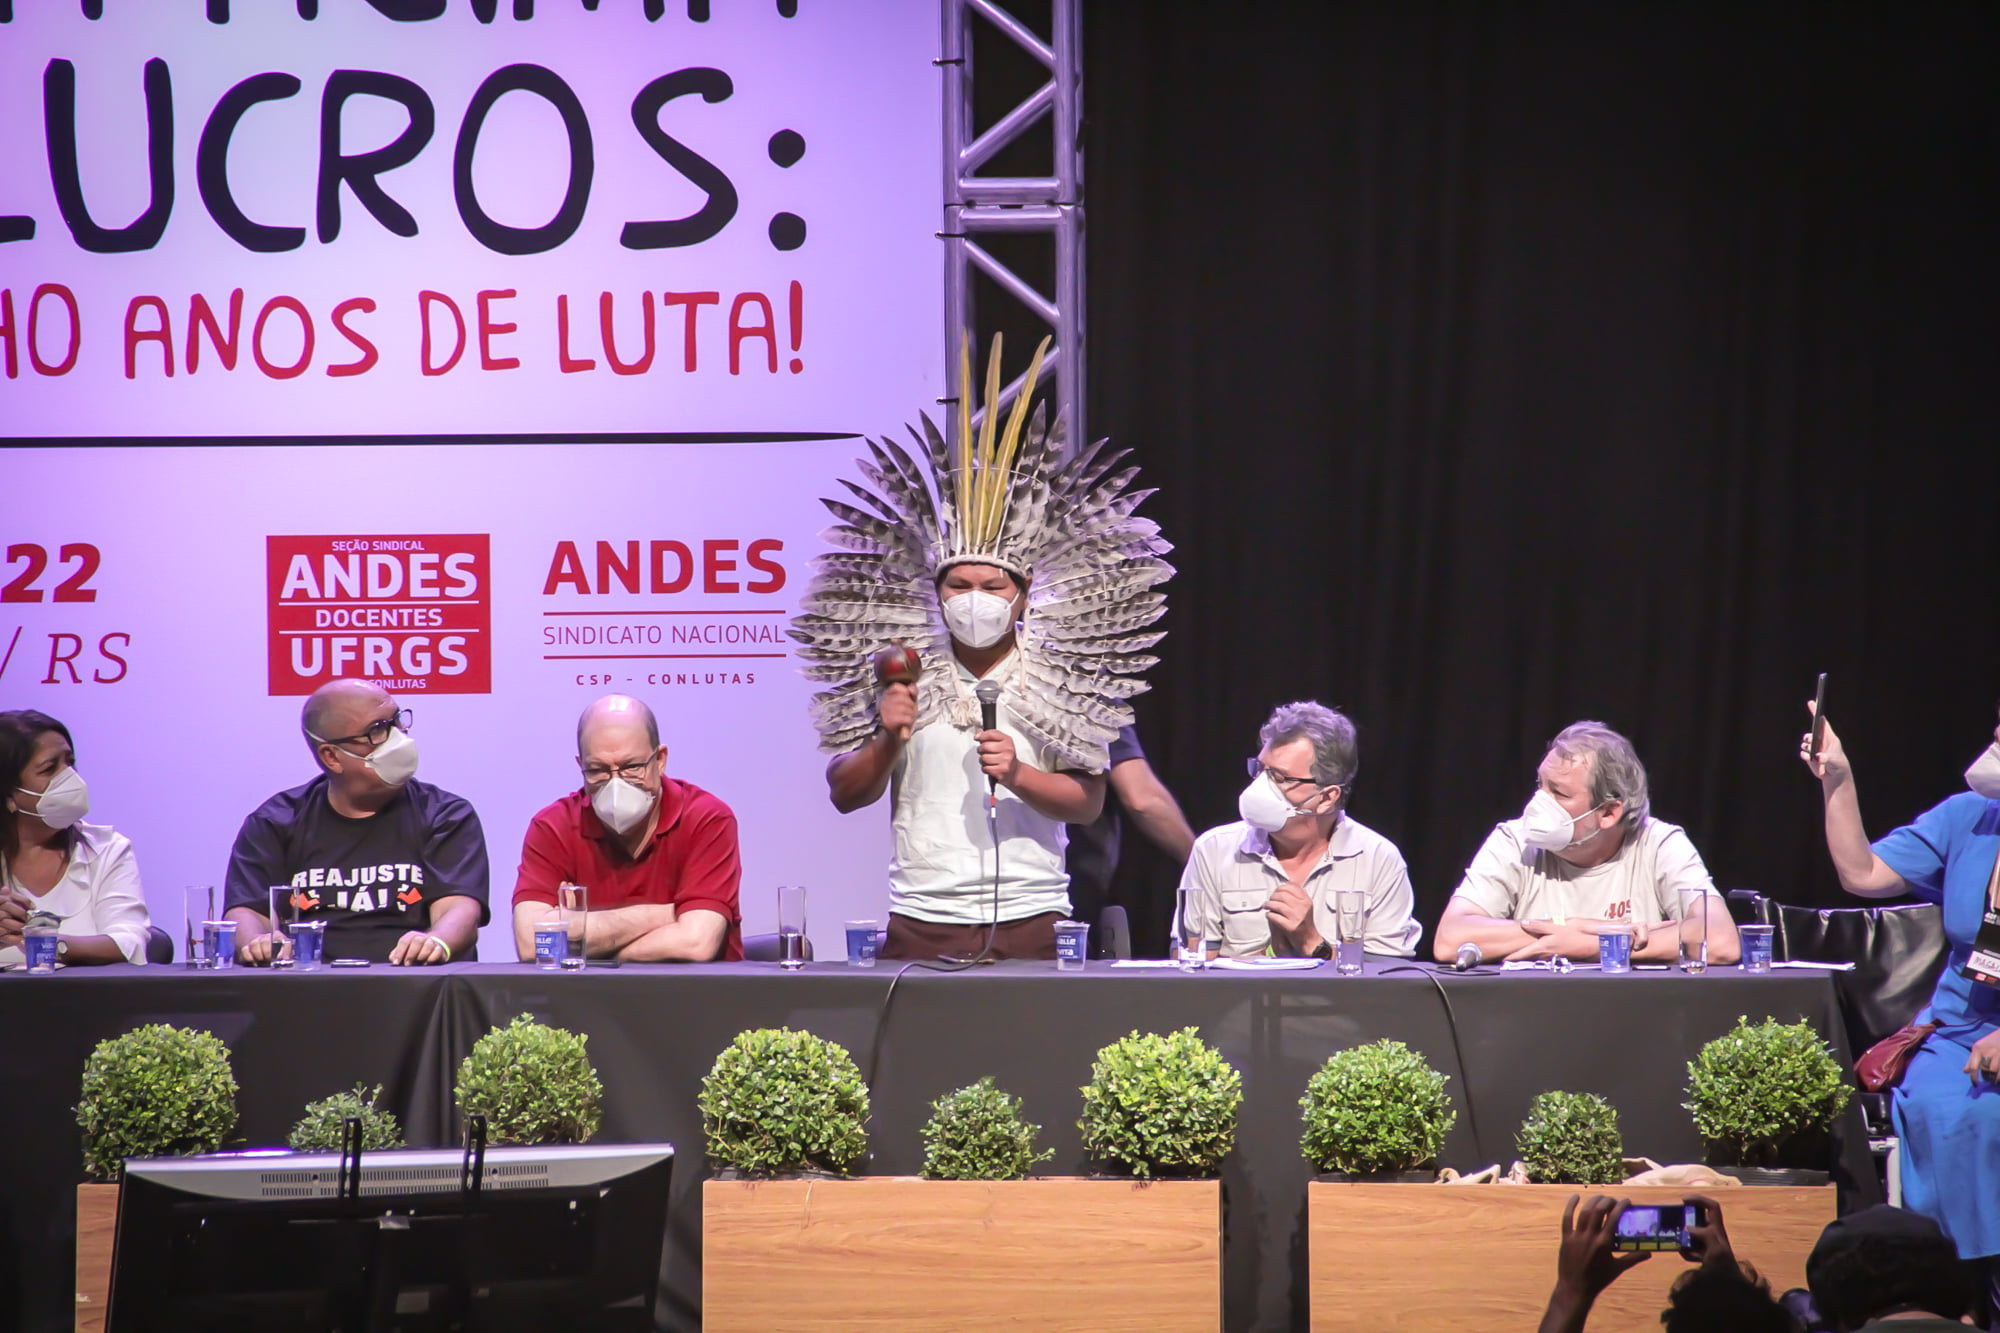 andes 40 congresso 03 — Vida acima dos lucros e fora Bolsonaro marcam abertura do 40º Congresso do ANDES-SN — ADunicamp